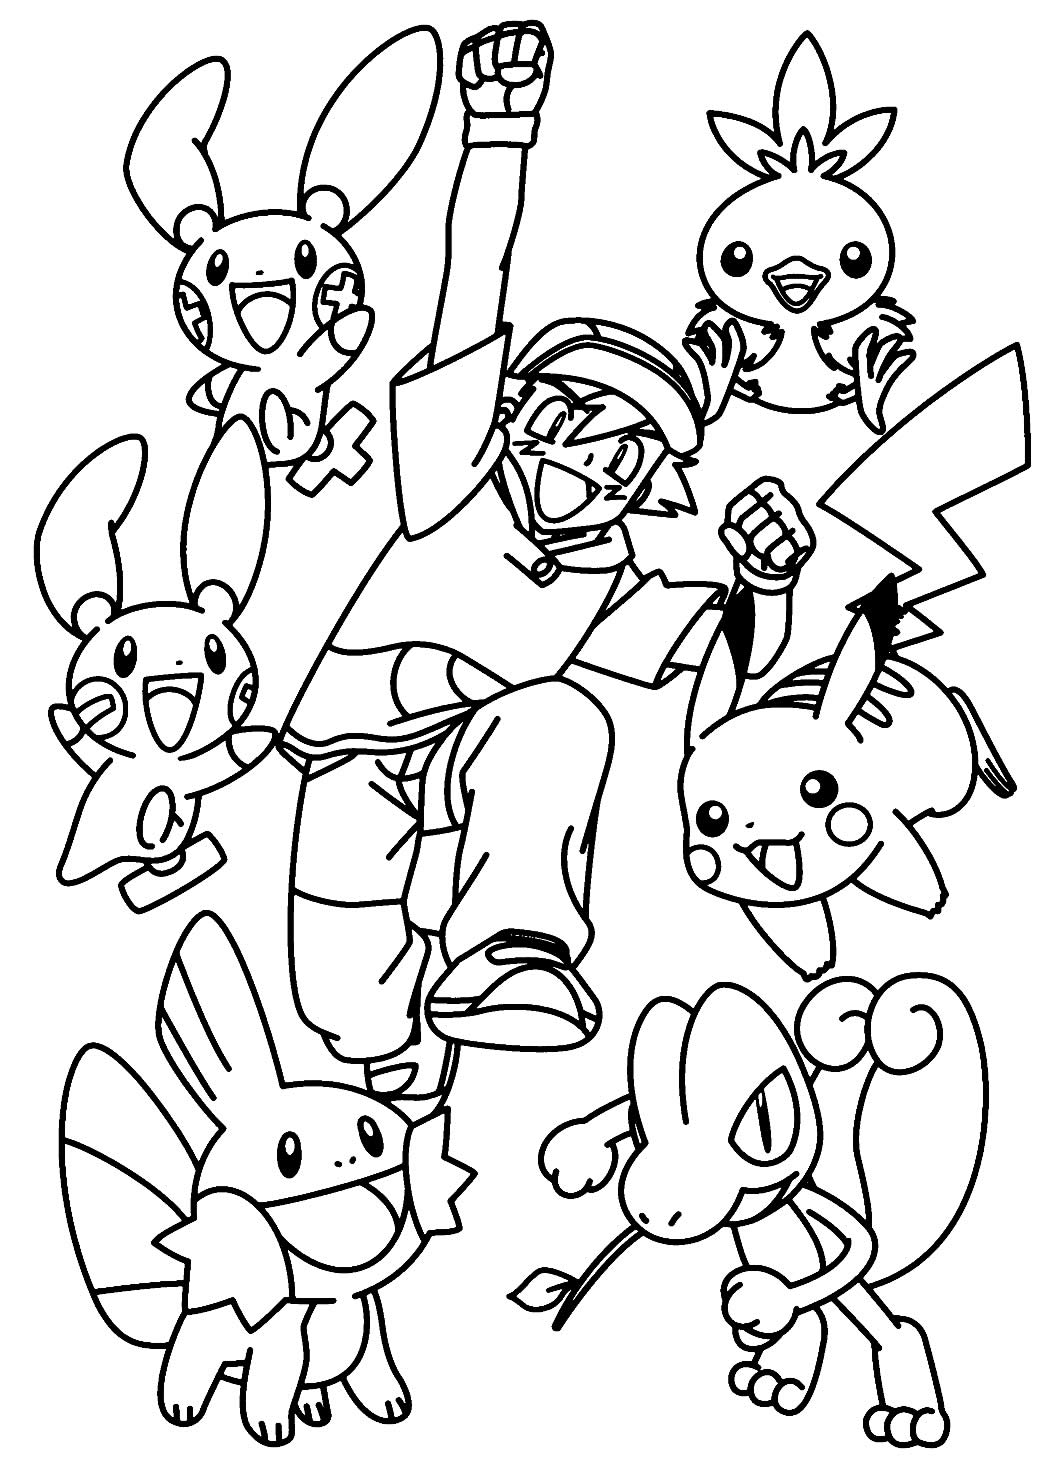 Desenhos Do Pokemon Para Imprimir E Colorir 19 Fichas E Atividades 1540